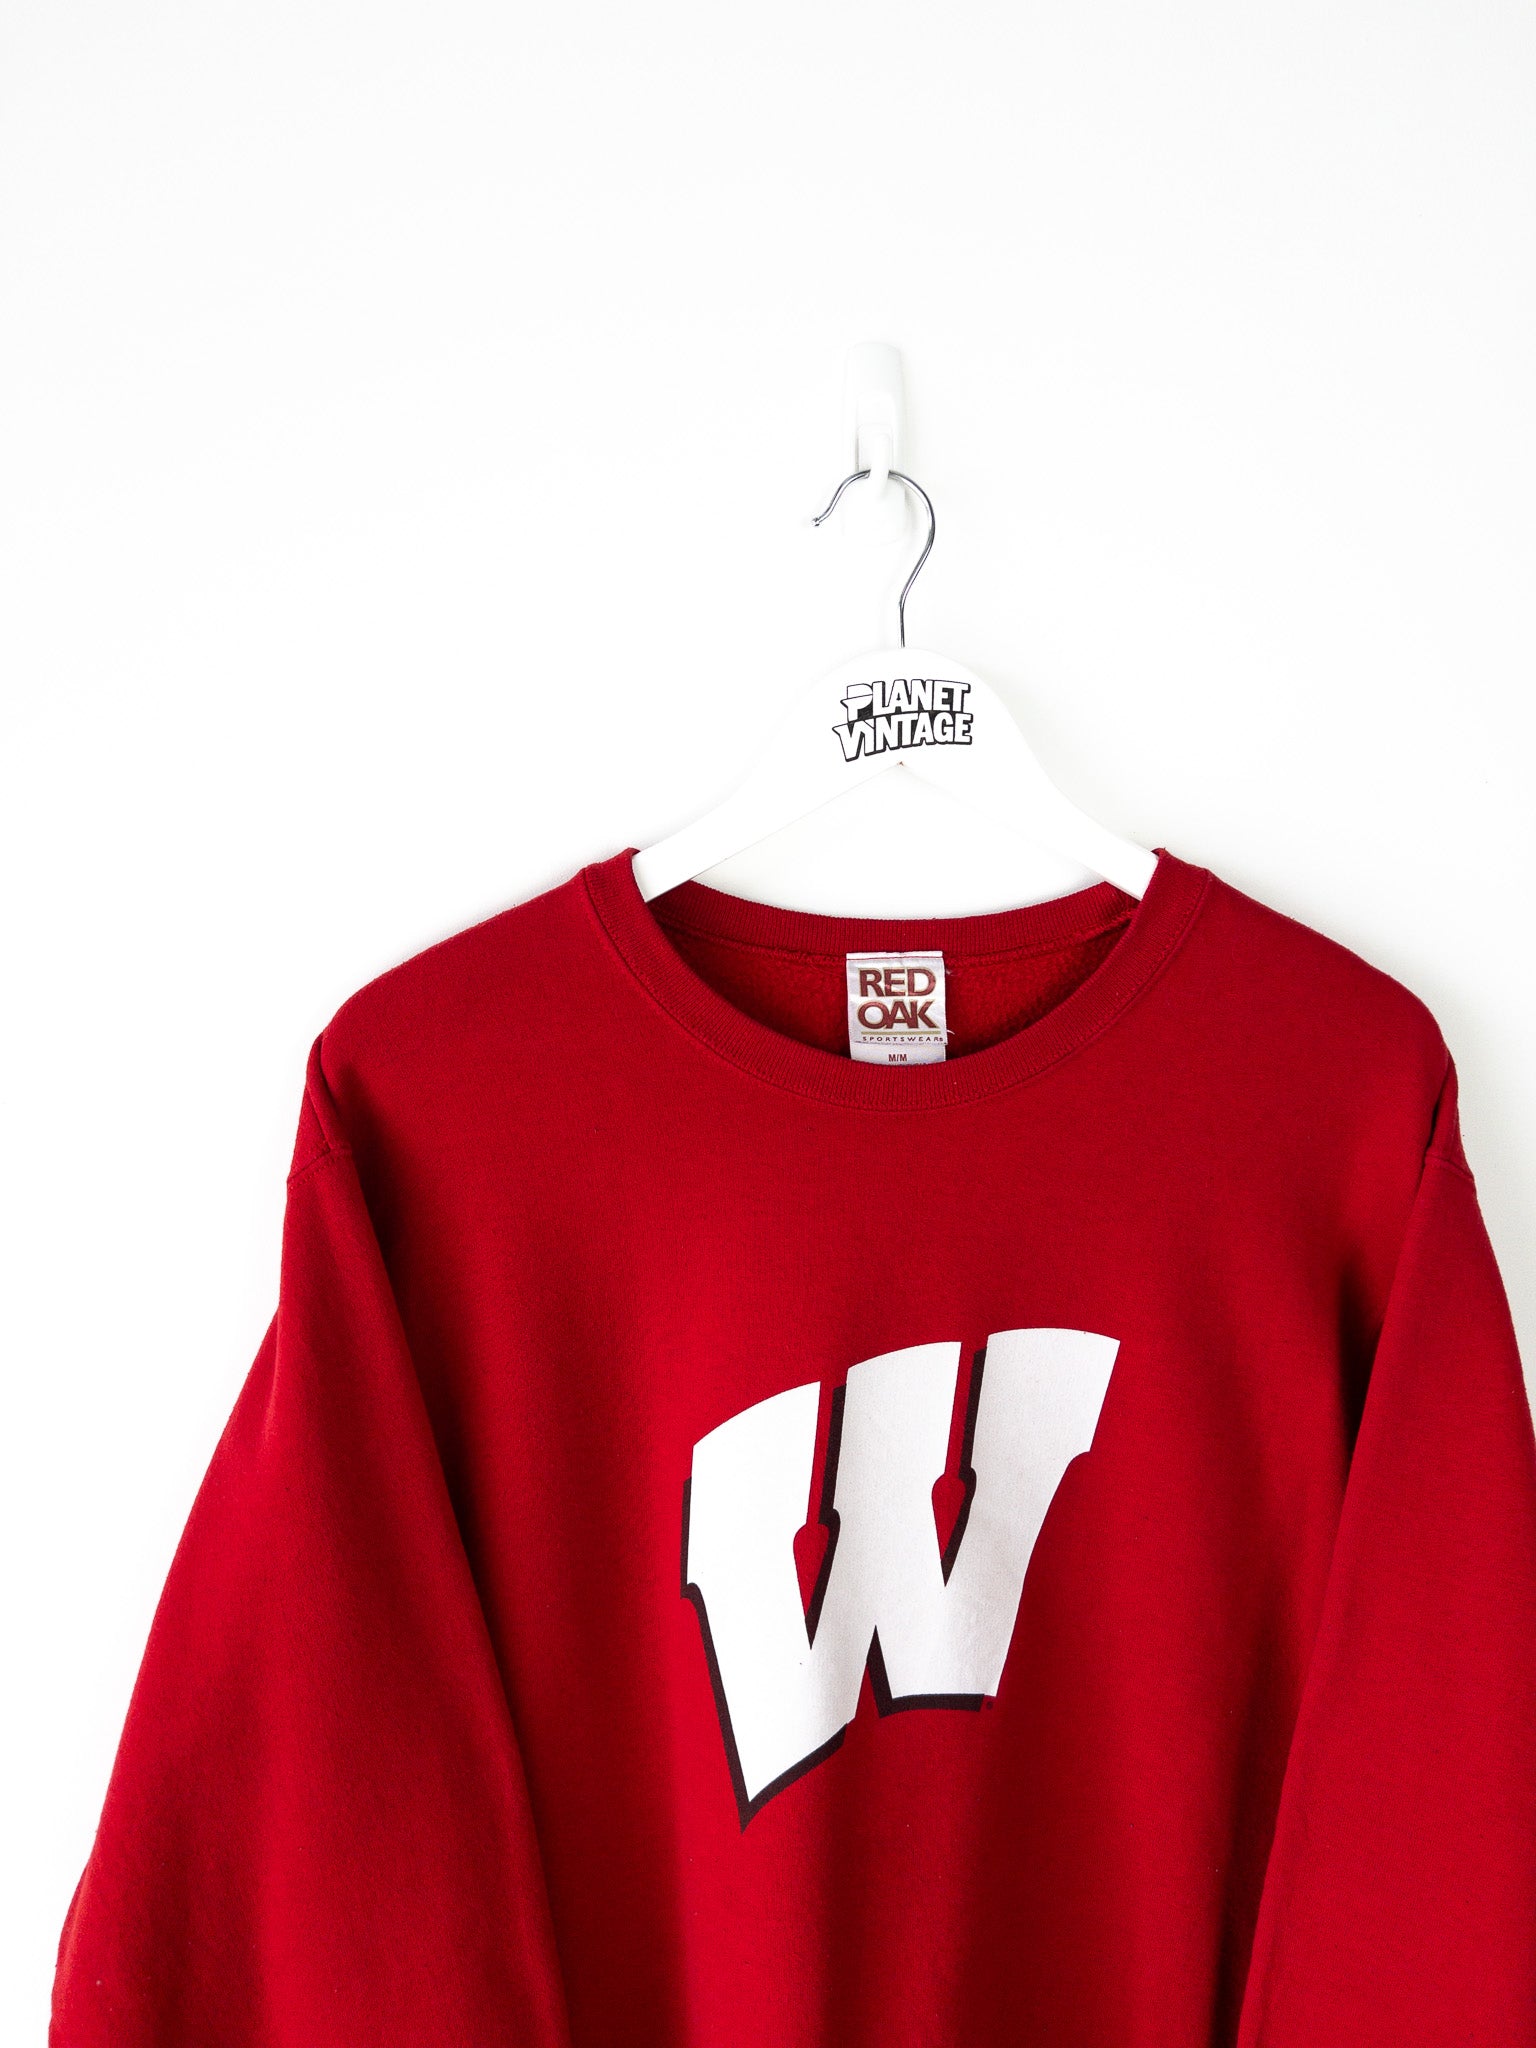 Vintage Wisconsin Badgers Sweatshirt (M)